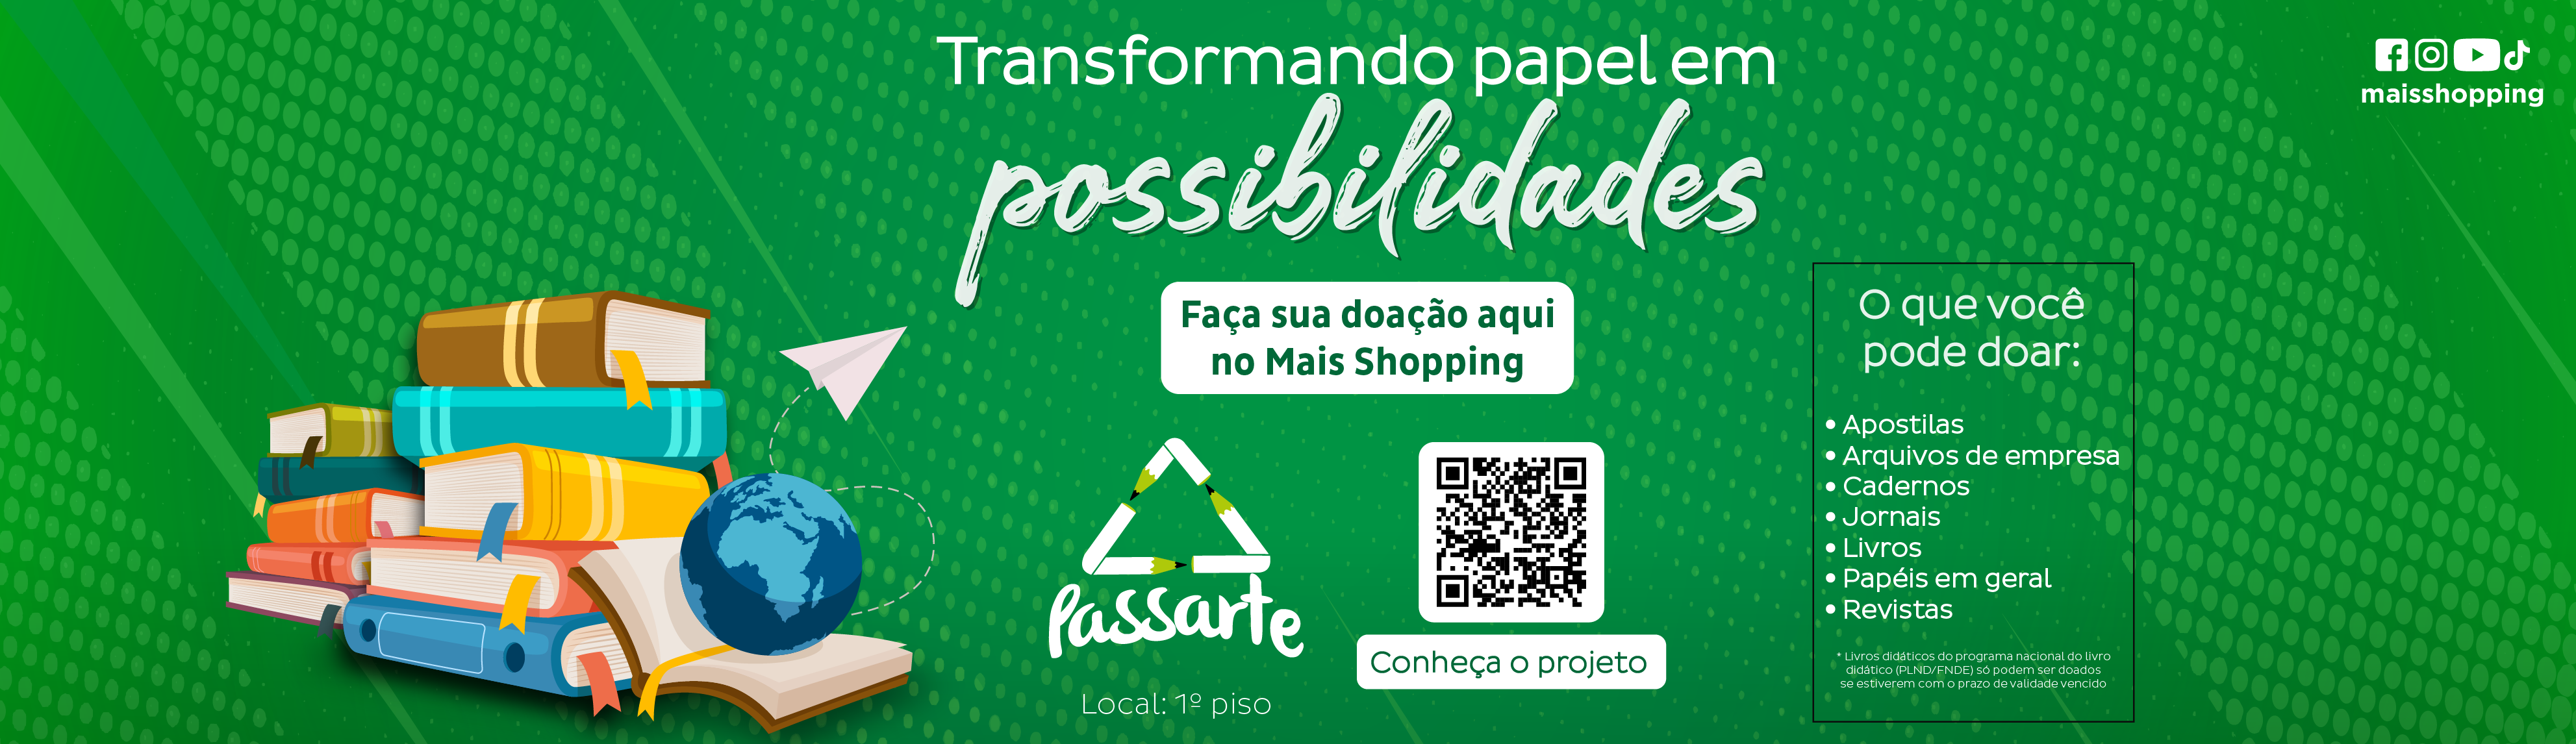 PASSARTE - TRANSFORMANDO PAPEL EM POSSIBILIDADES